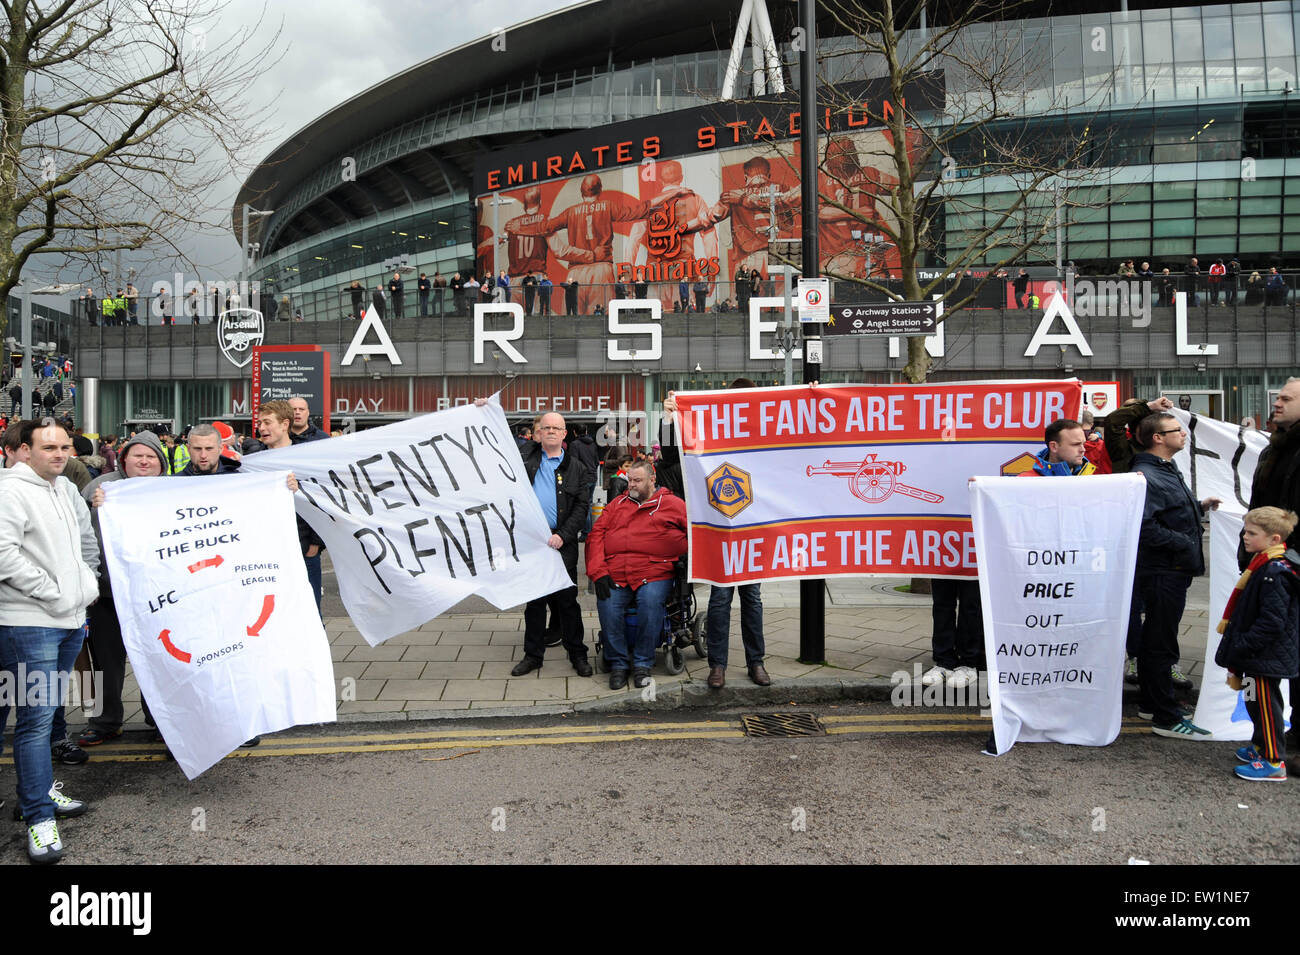 Fußball-Fans versammeln sich vor dem Emirates Stadium vor dem Spiel zwischen Arsenal und Liverpool zum protest gegen die steigende Ticketpreise in der Premier League.  Mitwirkende: Arsenal-Fans protestieren wo: London, Vereinigtes Königreich bei: 4. April 2015 Stockfoto